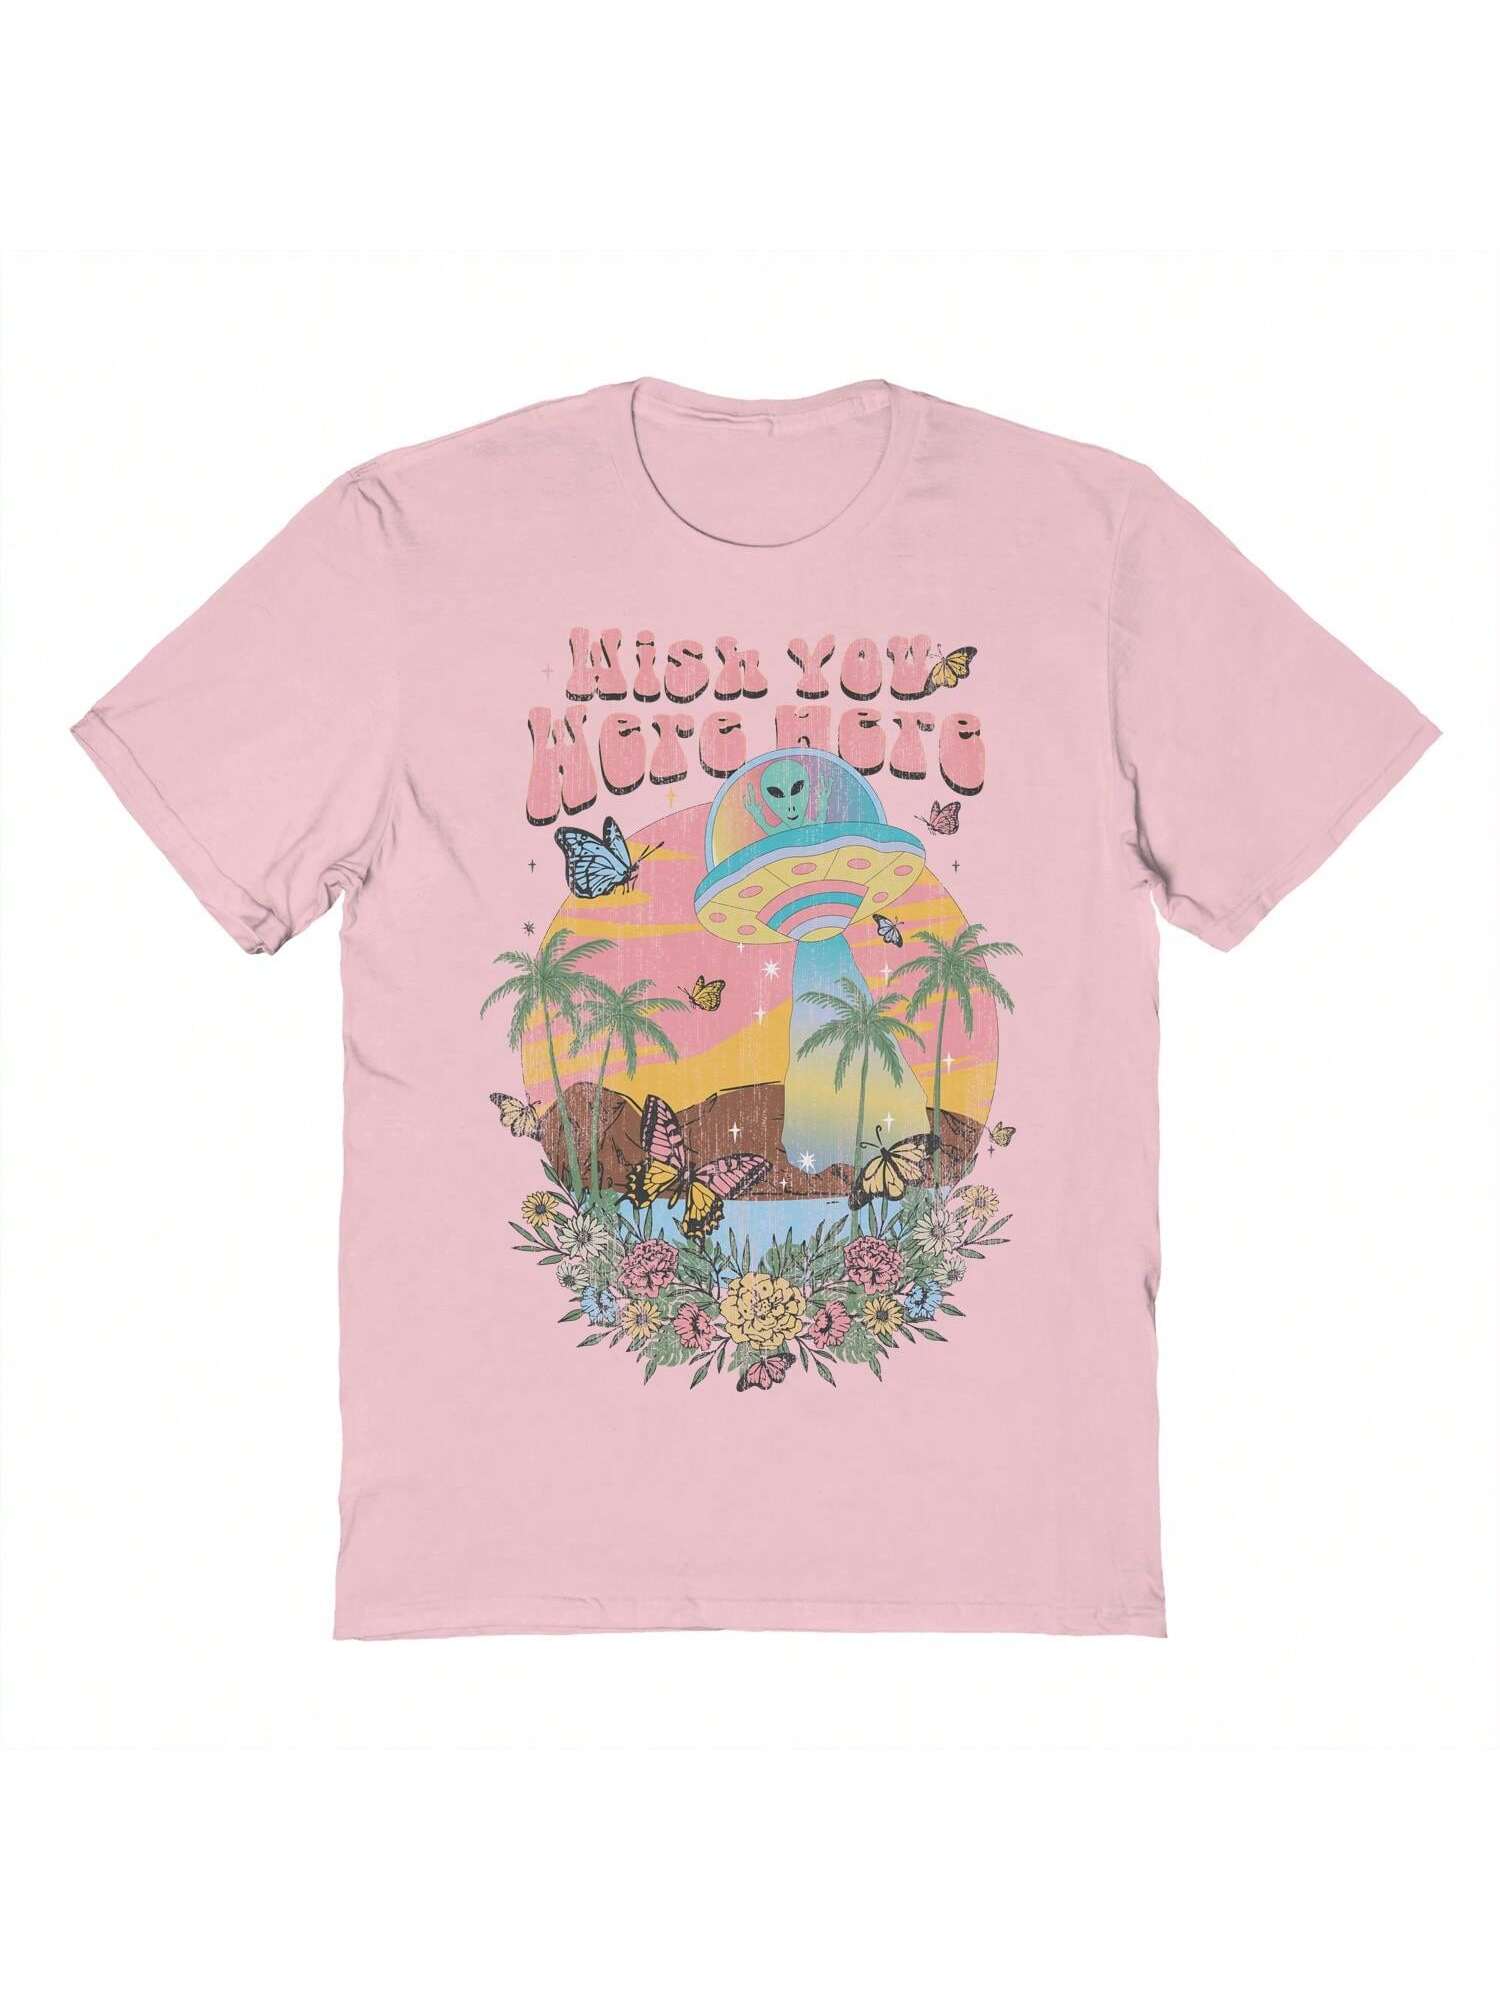 если бы ты был здесь пиколт дж Хлопковая футболка унисекс с короткими рукавами с графическим рисунком «Почти там хотелось бы, розовый